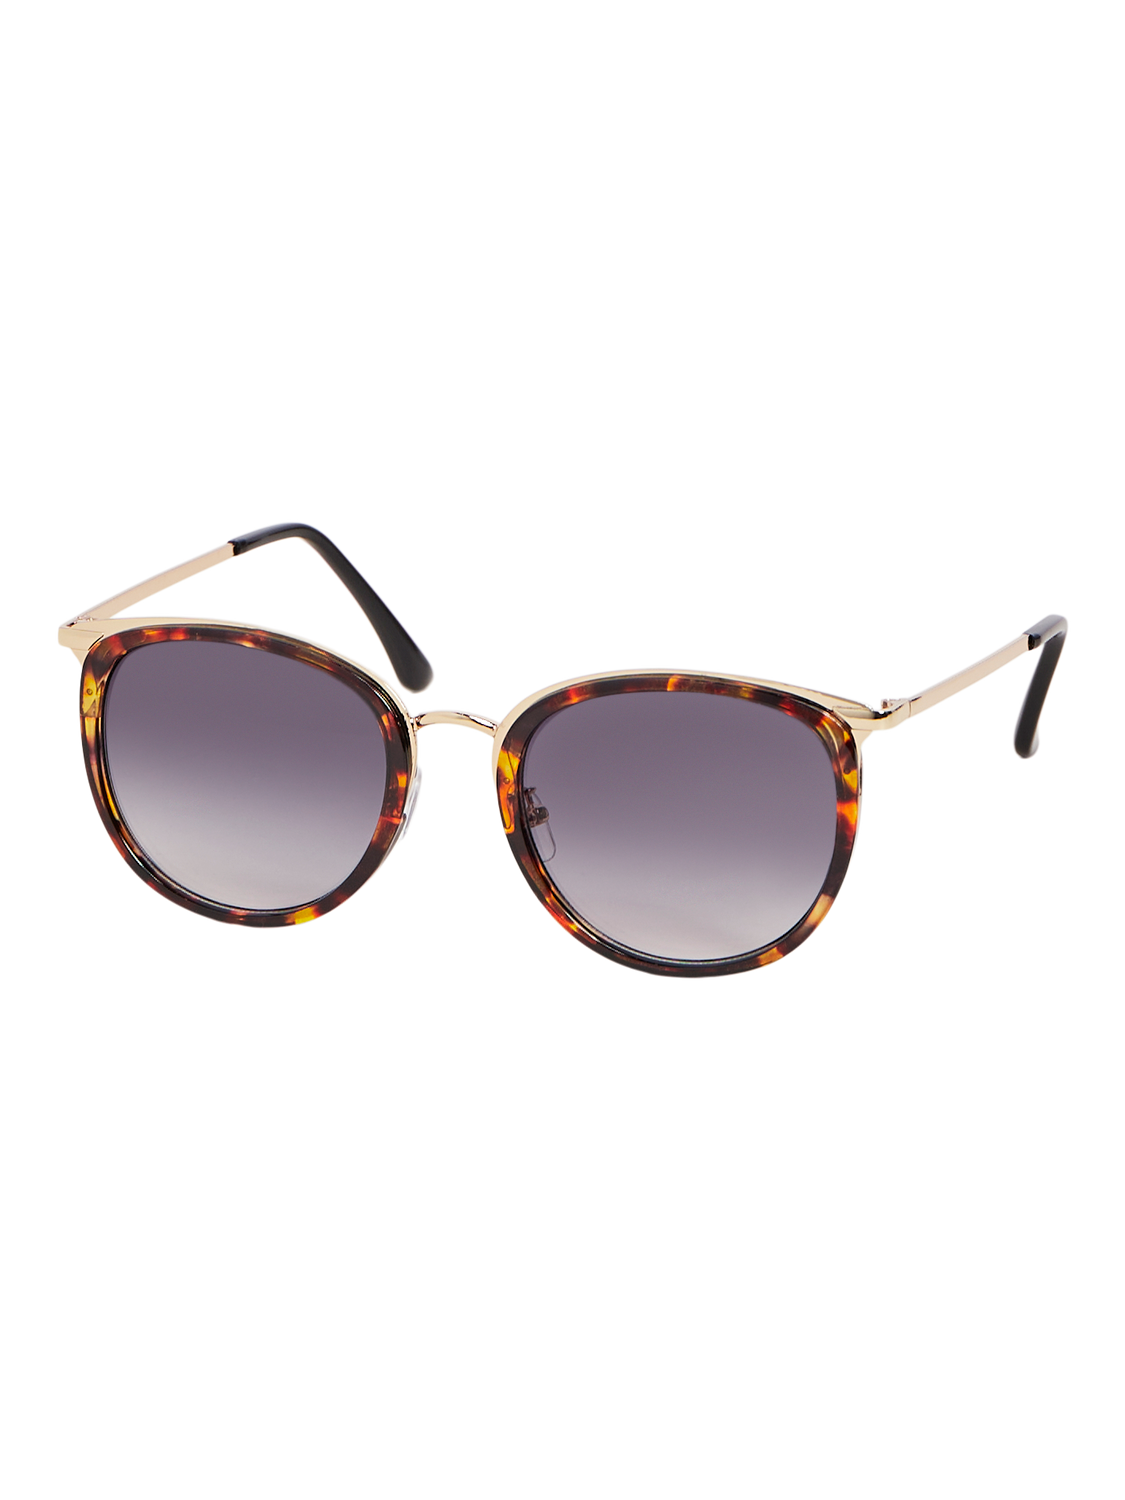 OBJRUNLA Sunglasses - Java